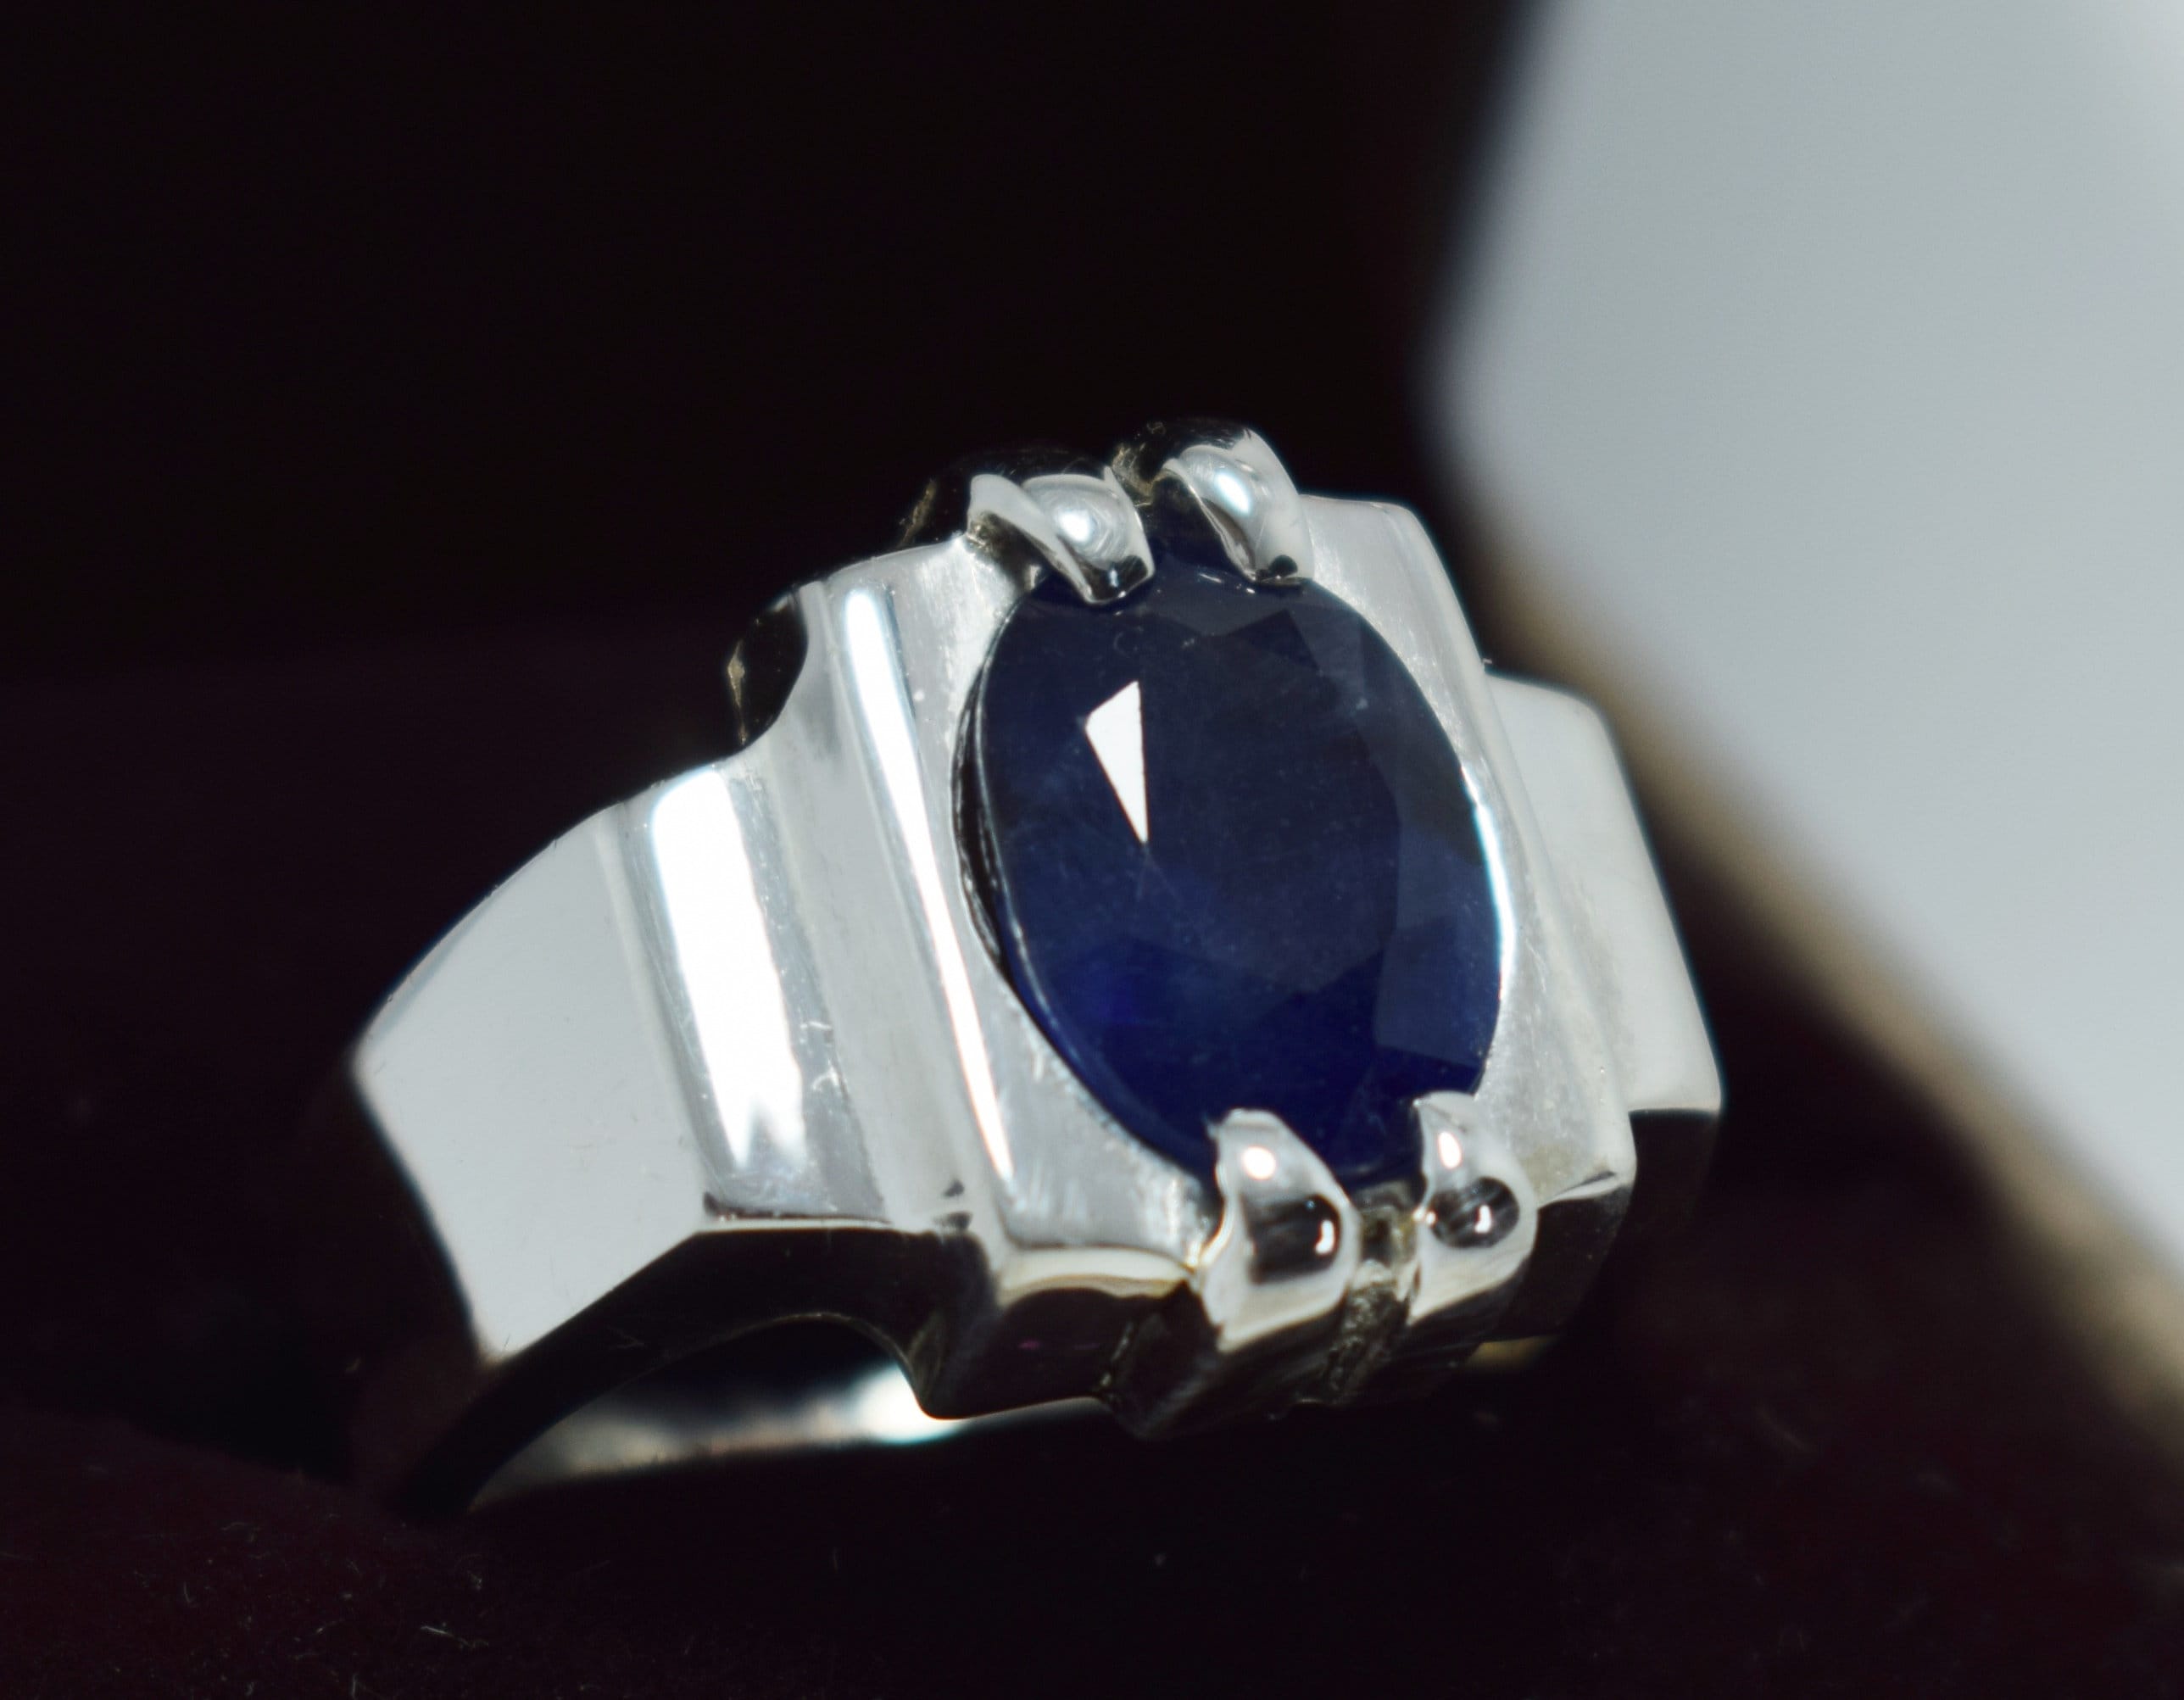 Blue nuit vs blue sapphire, Page 2